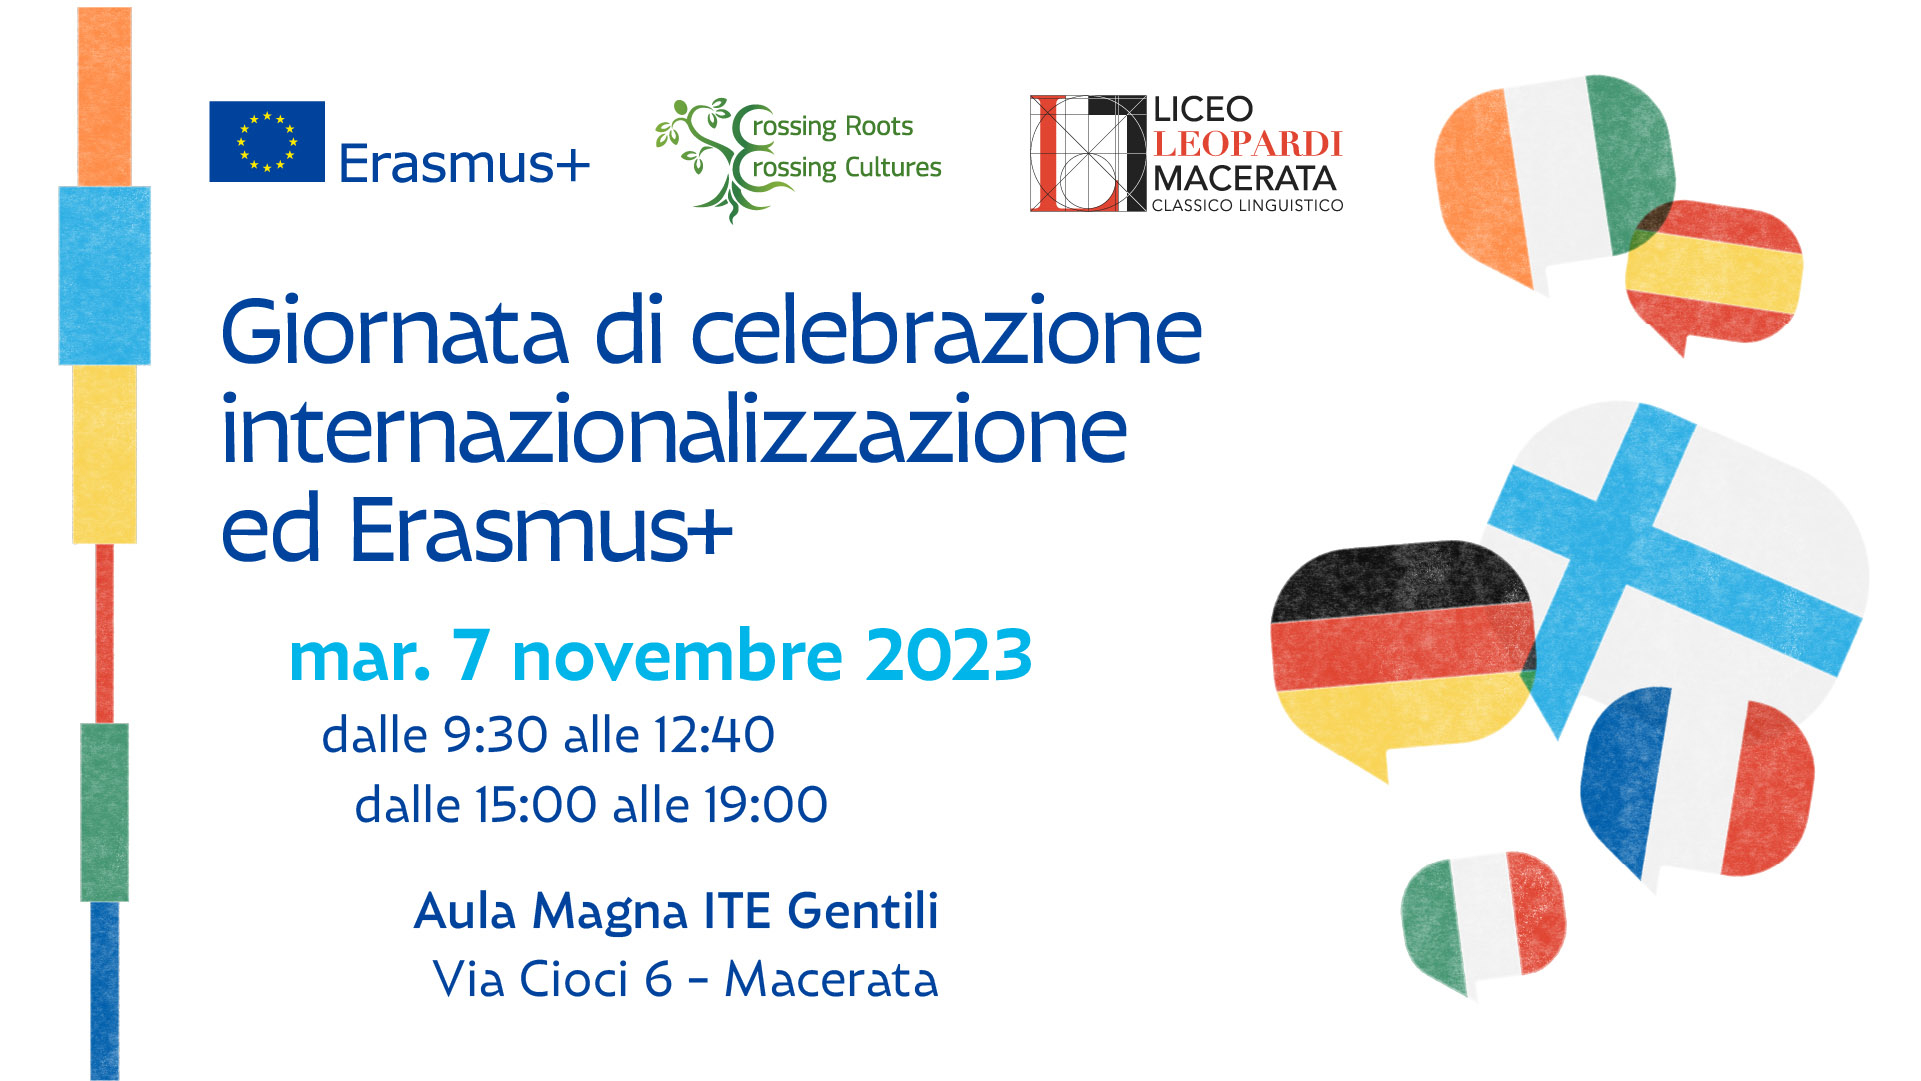  Giornata di celebrazione internazionalizzazione ed Erasmus+ - Liceo Statale G. Leopardi Macerata